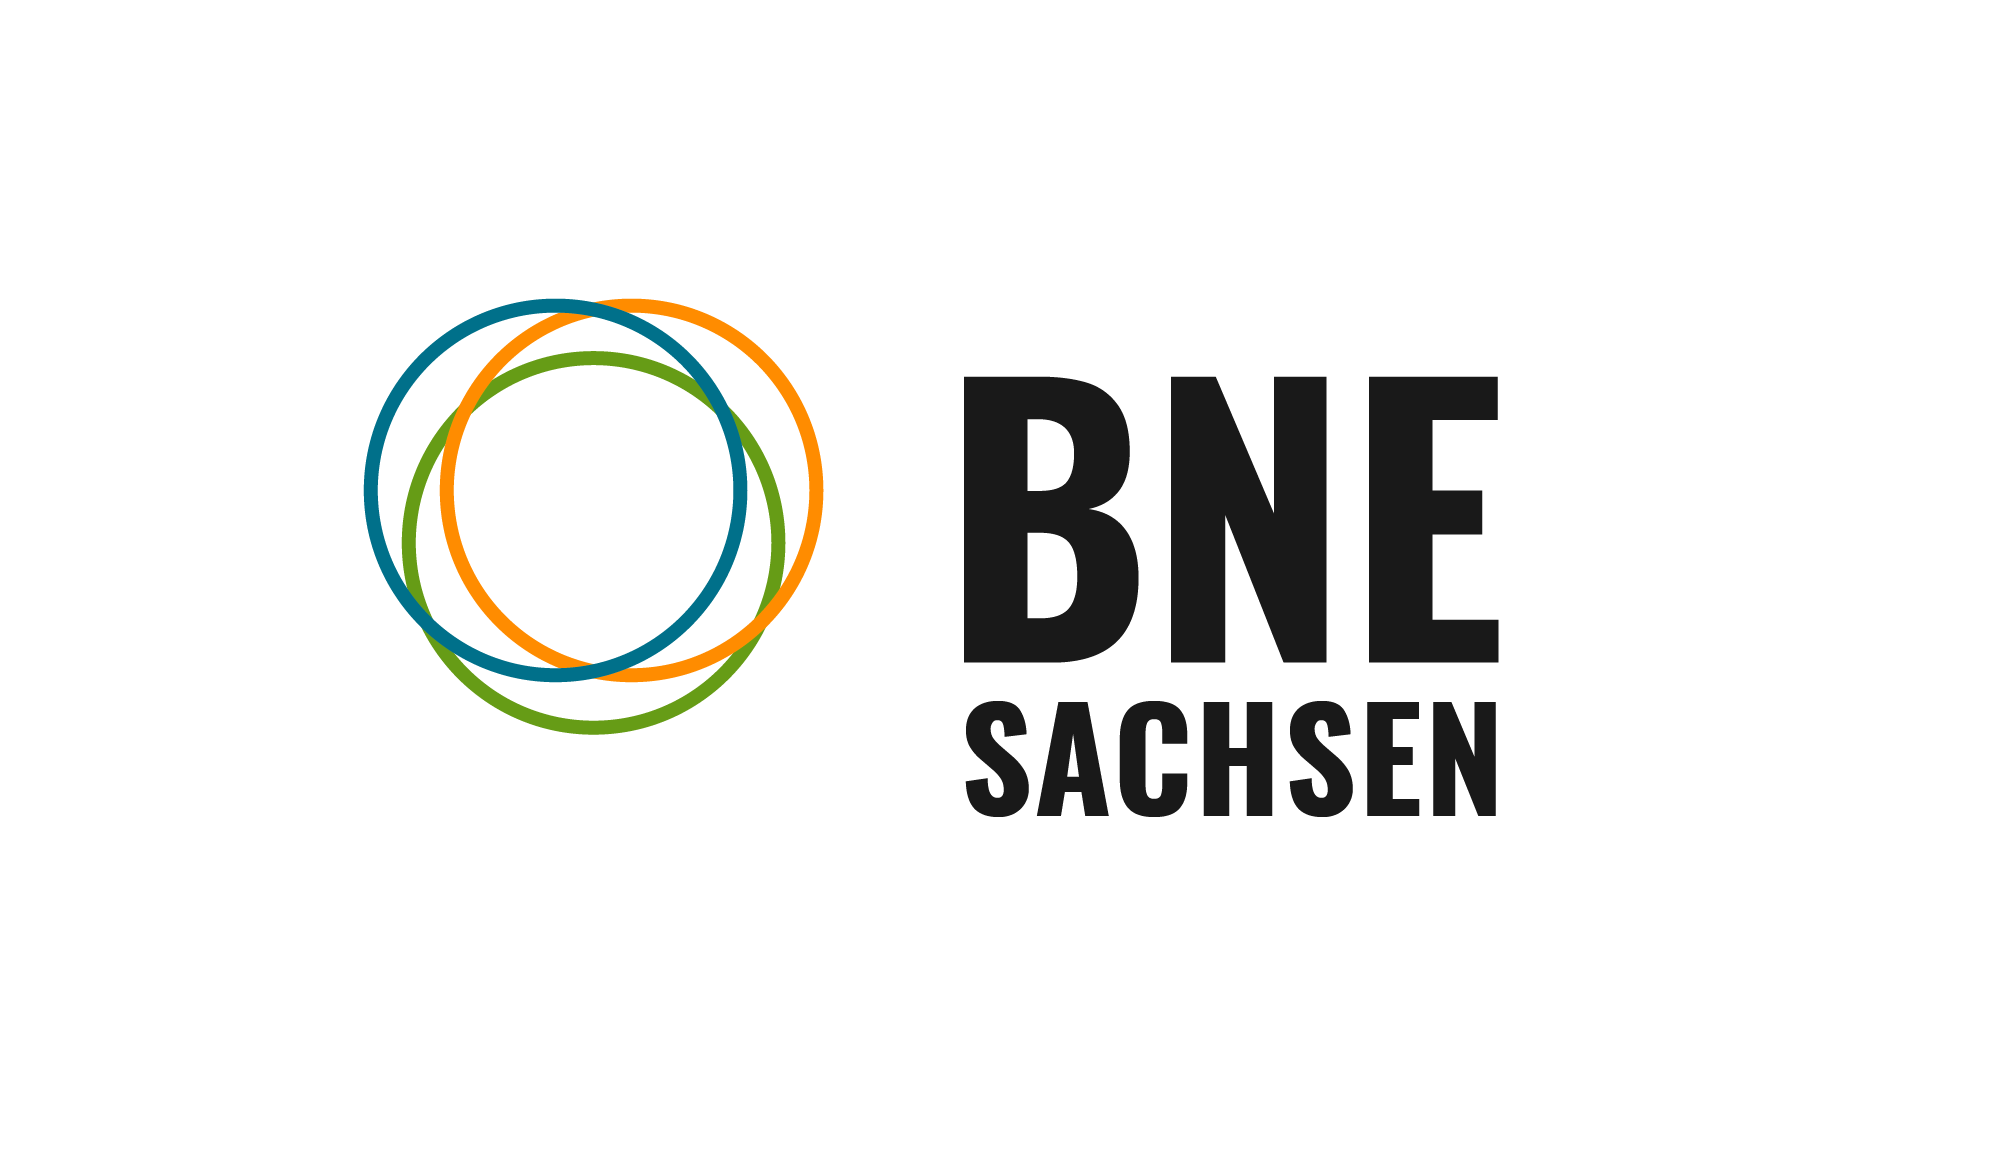 BNE Sachsen Logo bunt